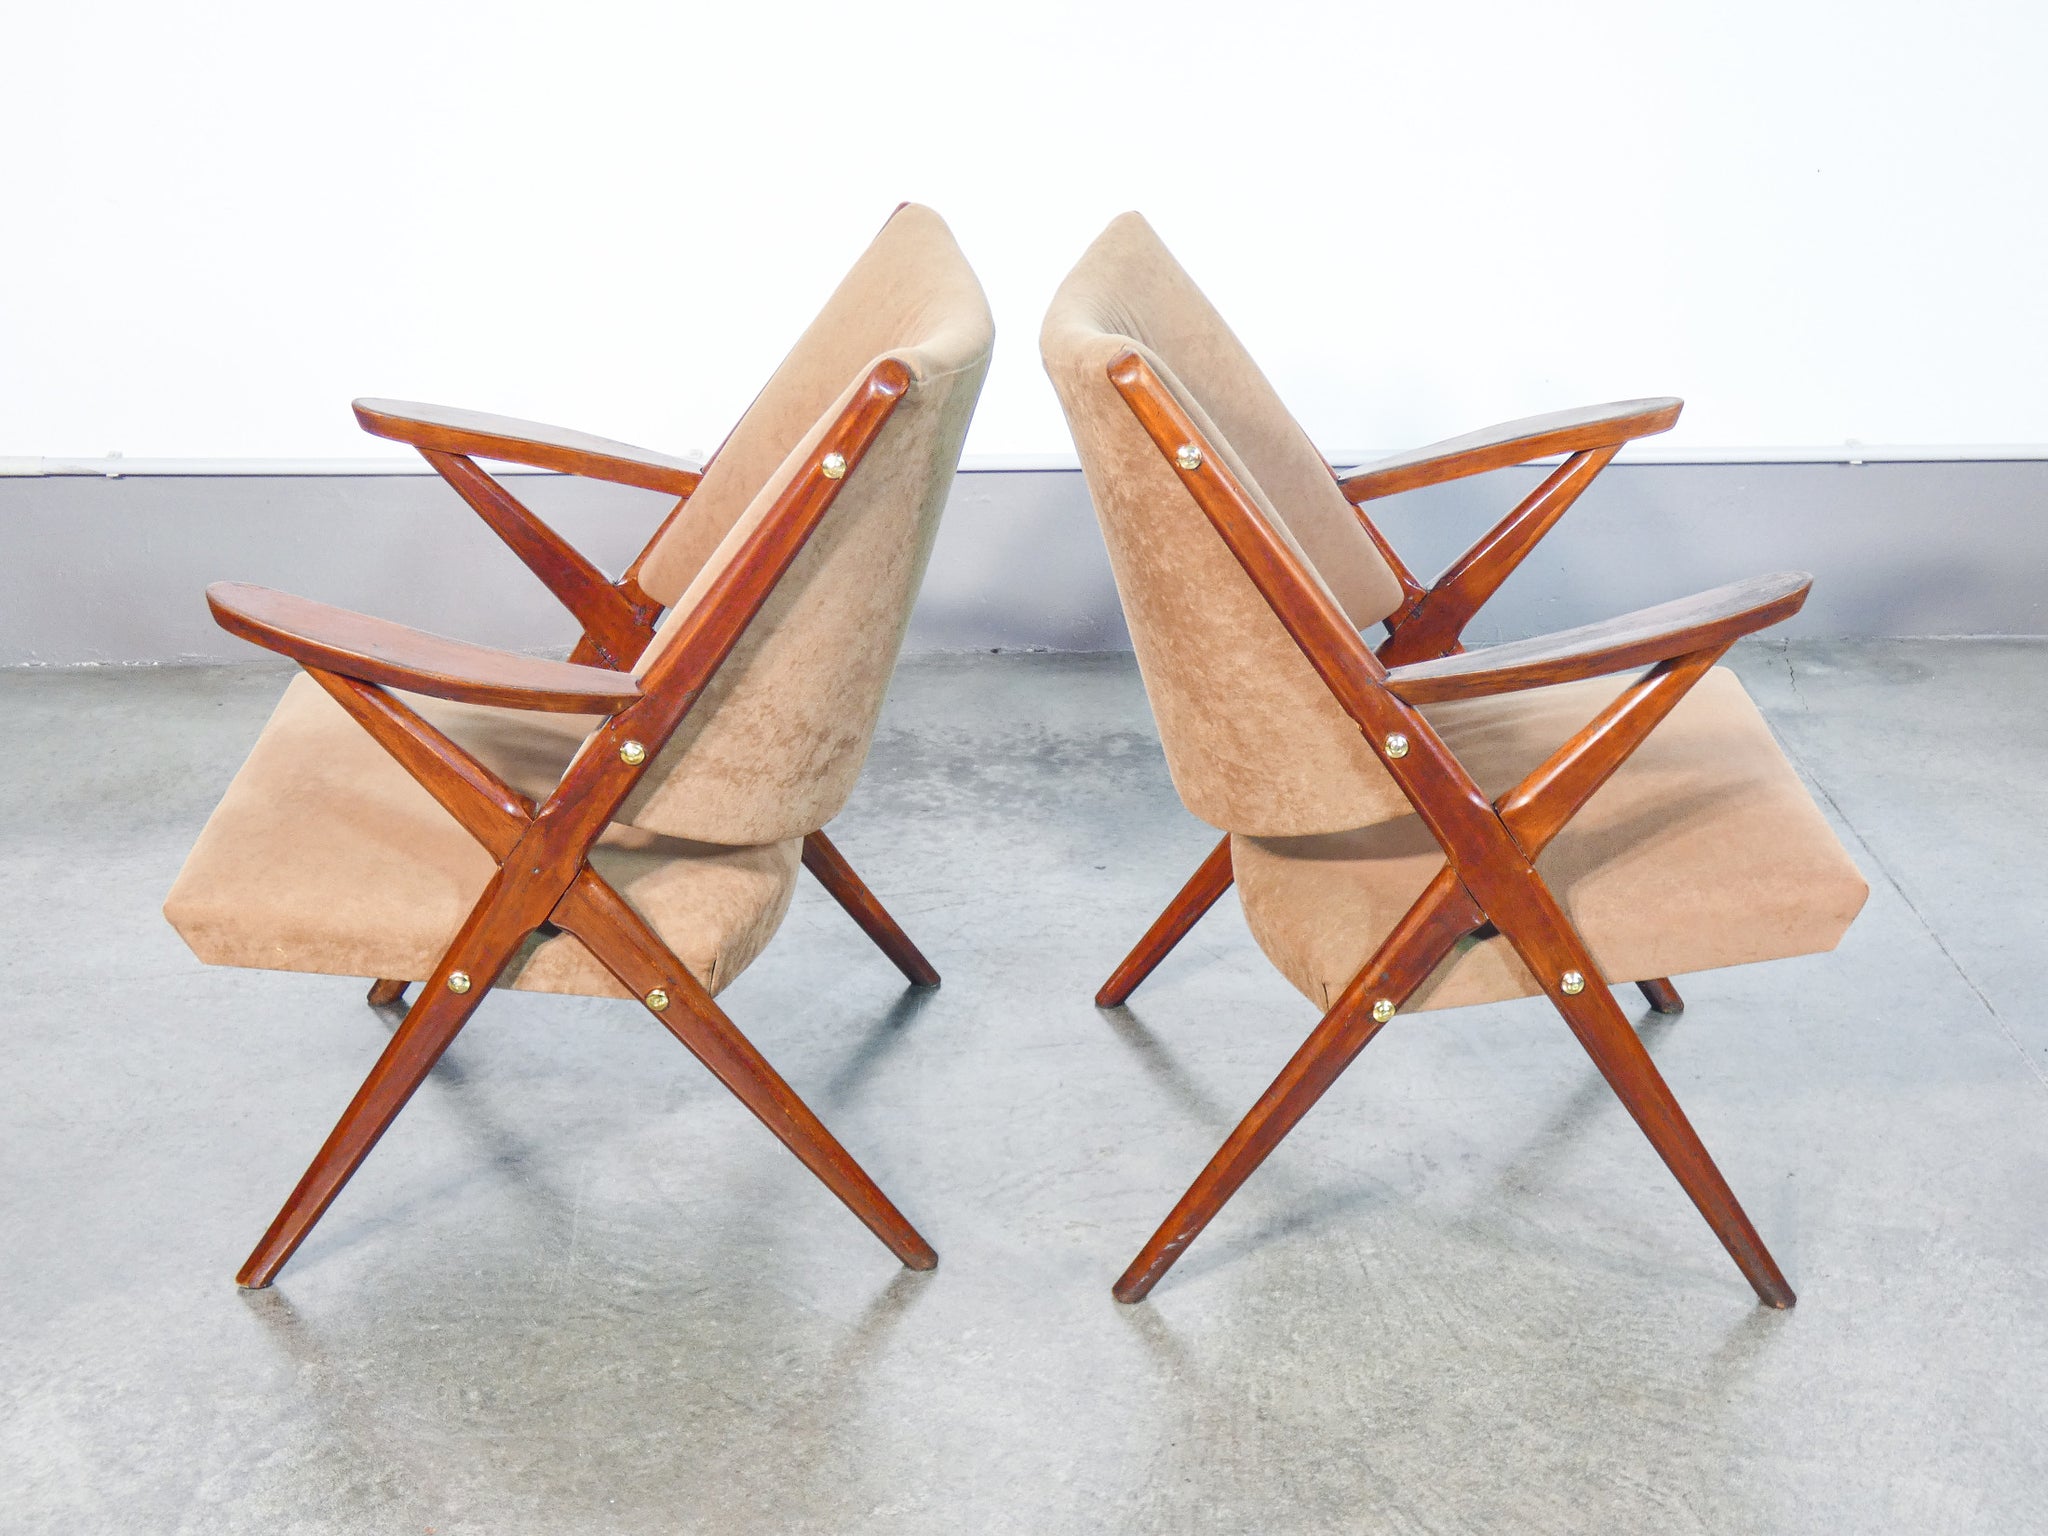 coppia poltrone design italia 1940s legno faggio sedie vintage armchairs